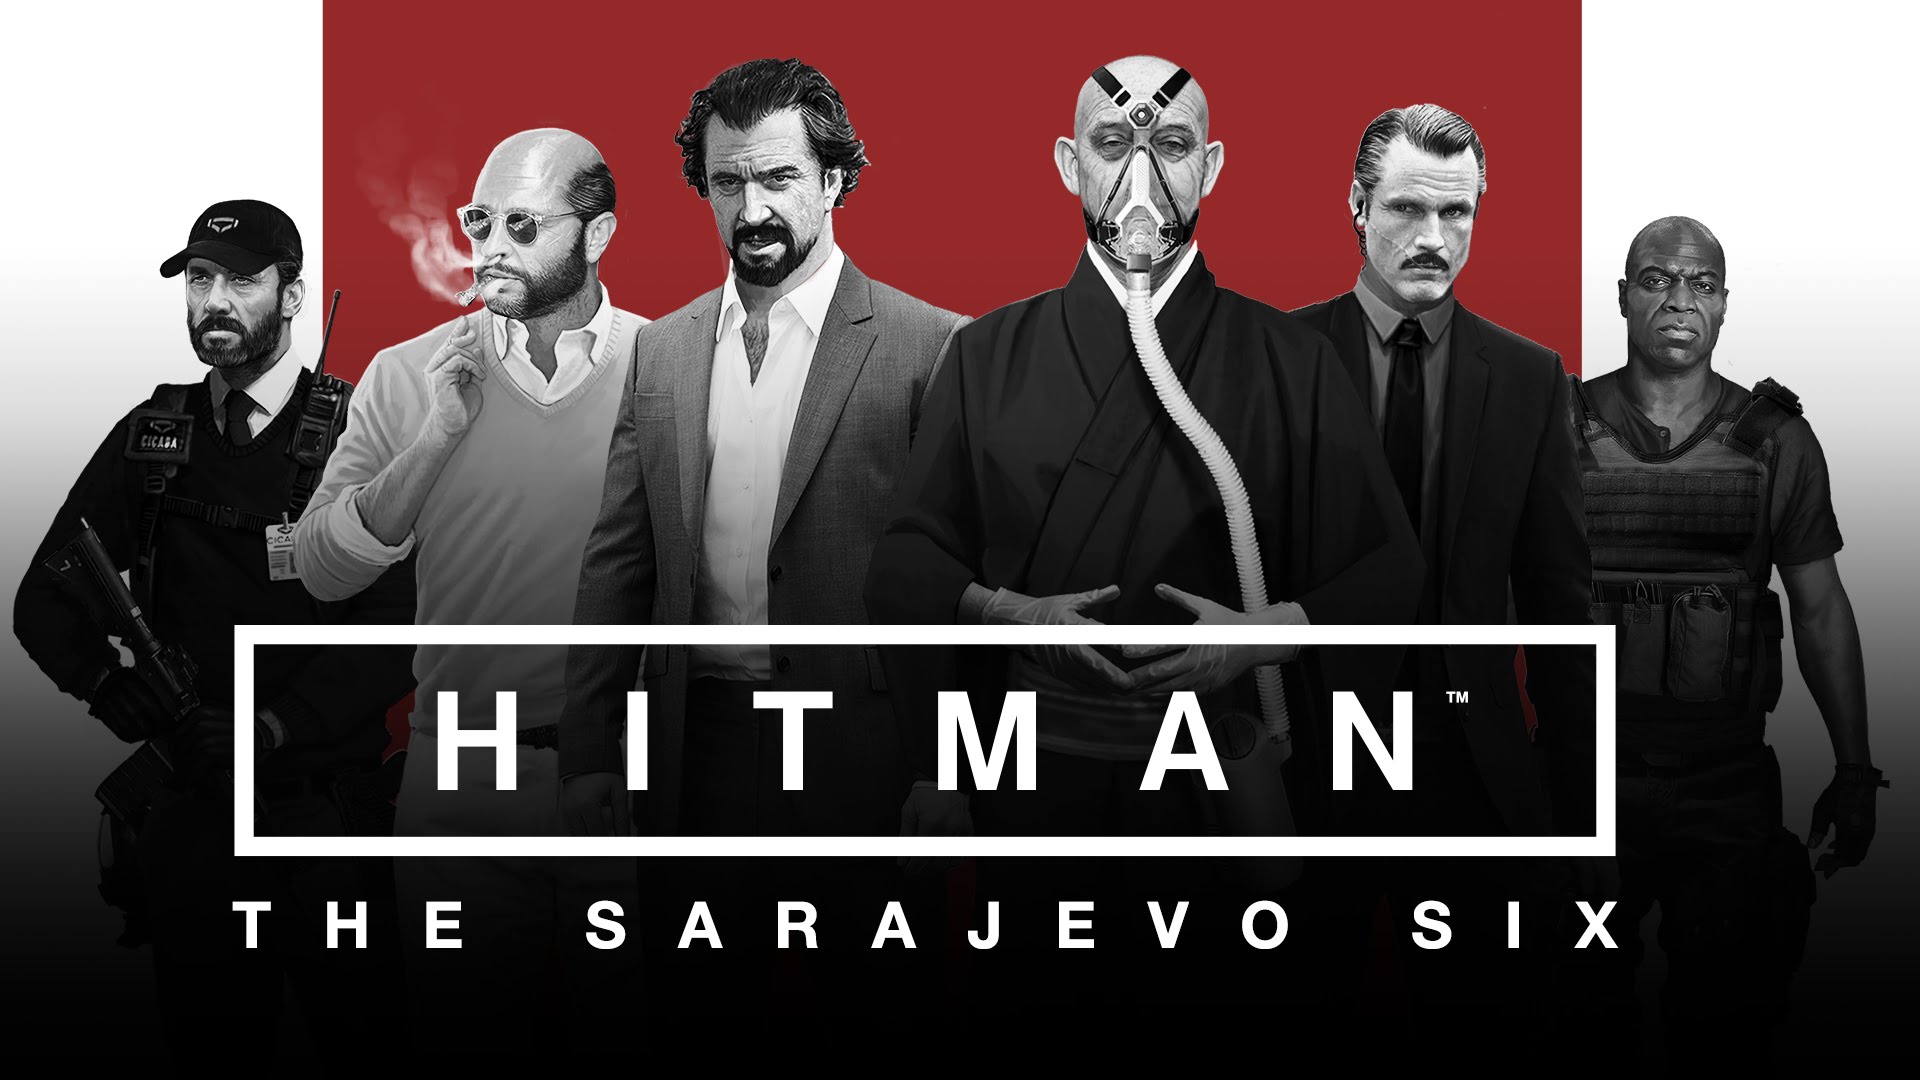 HITMAN - Sarajevo Six